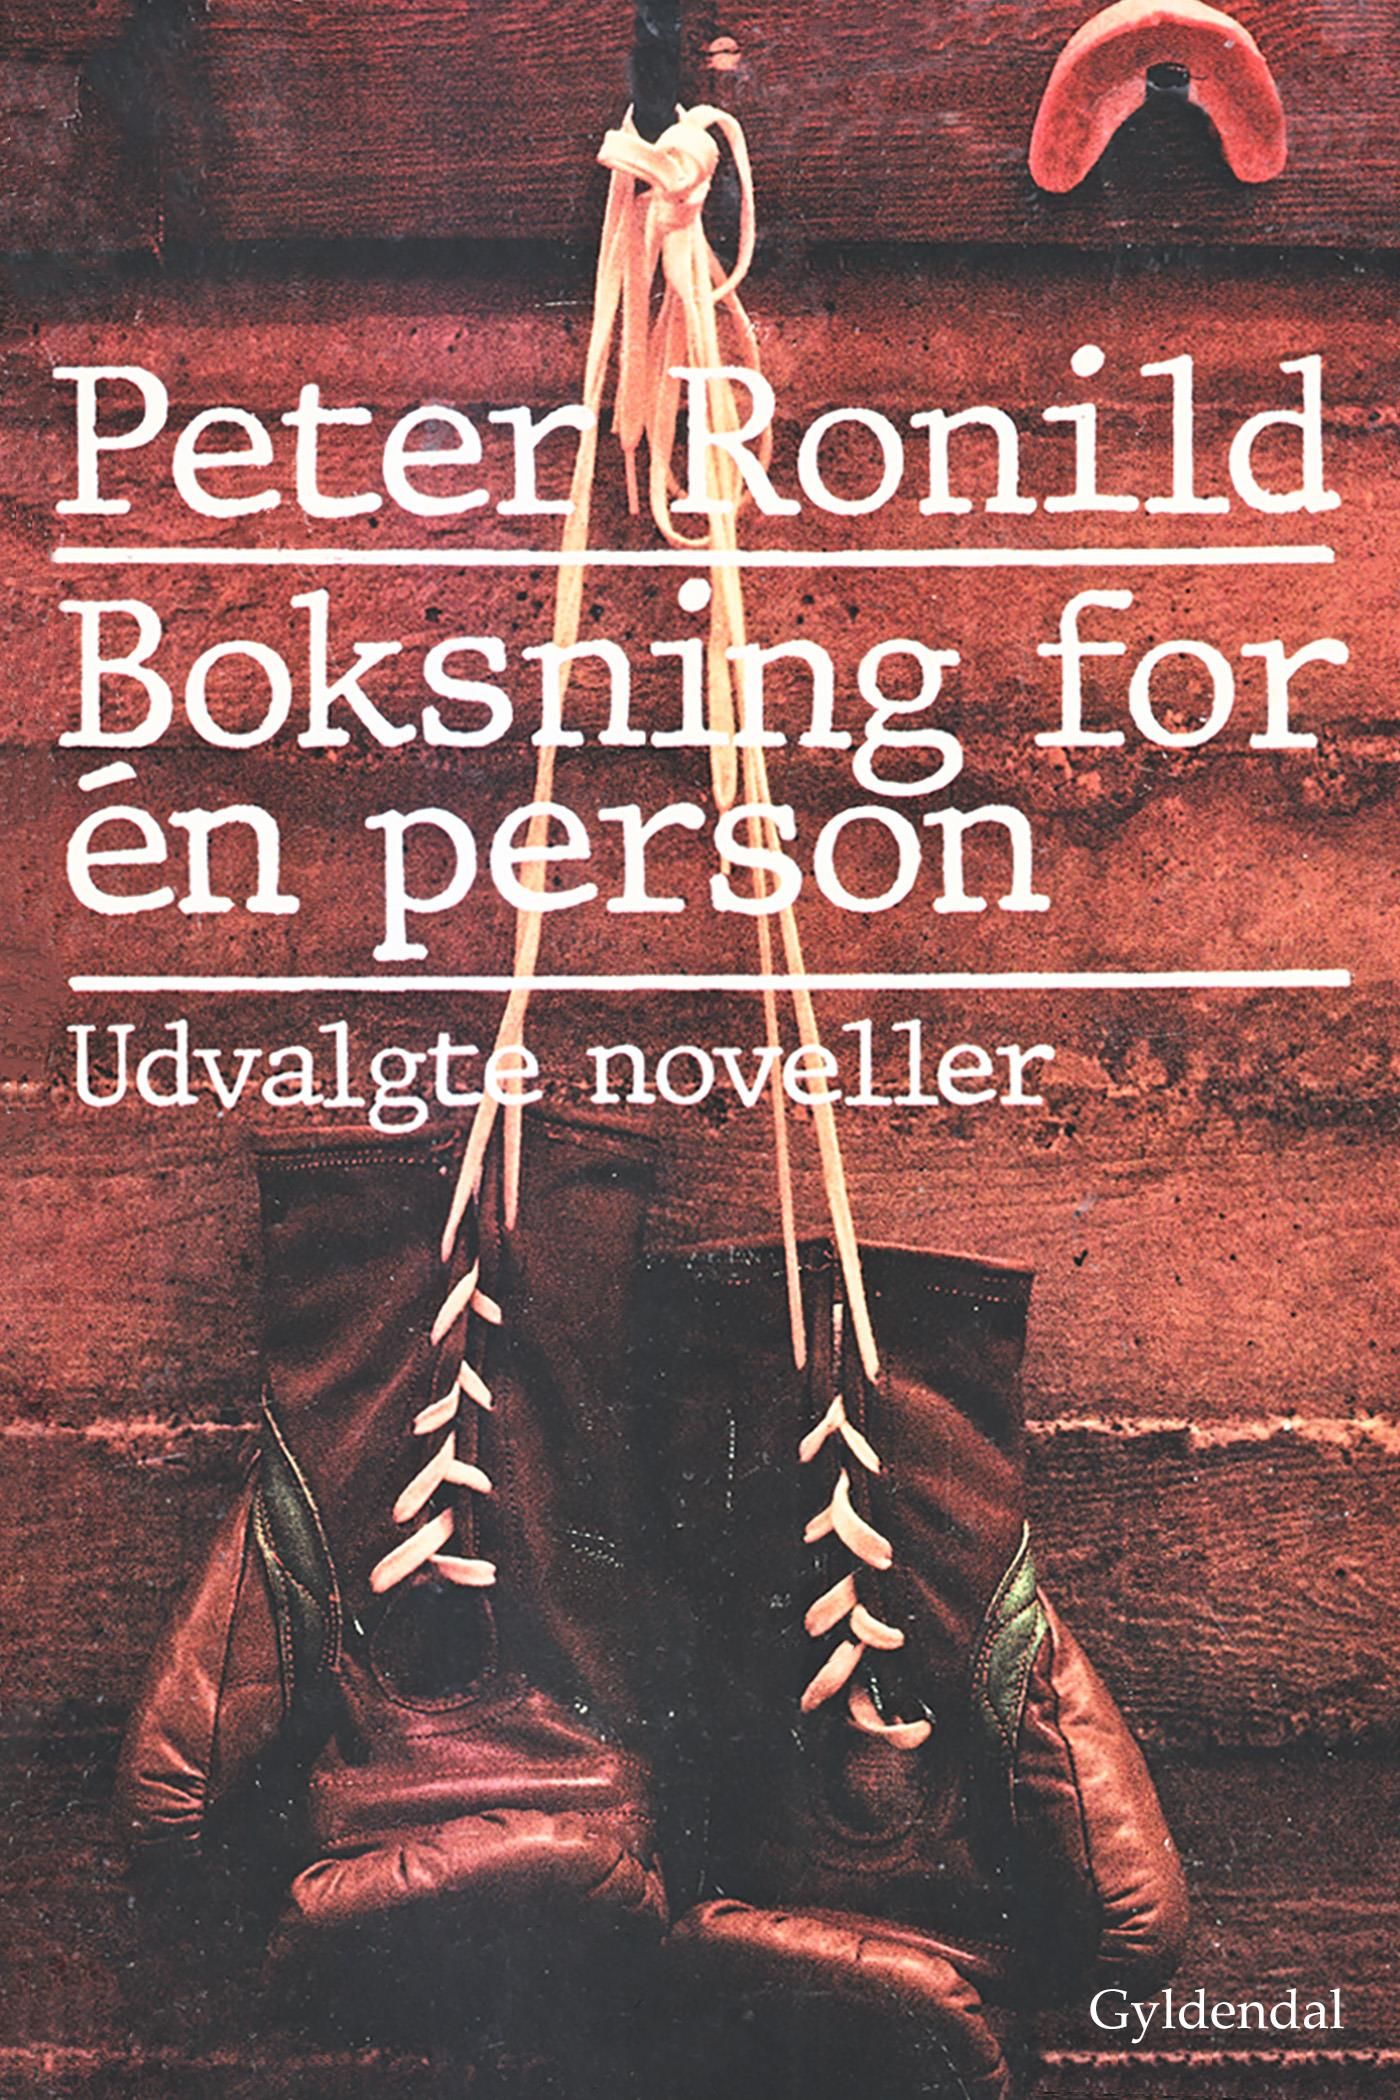 Boksning for én person, e-bok av Peter Ronild